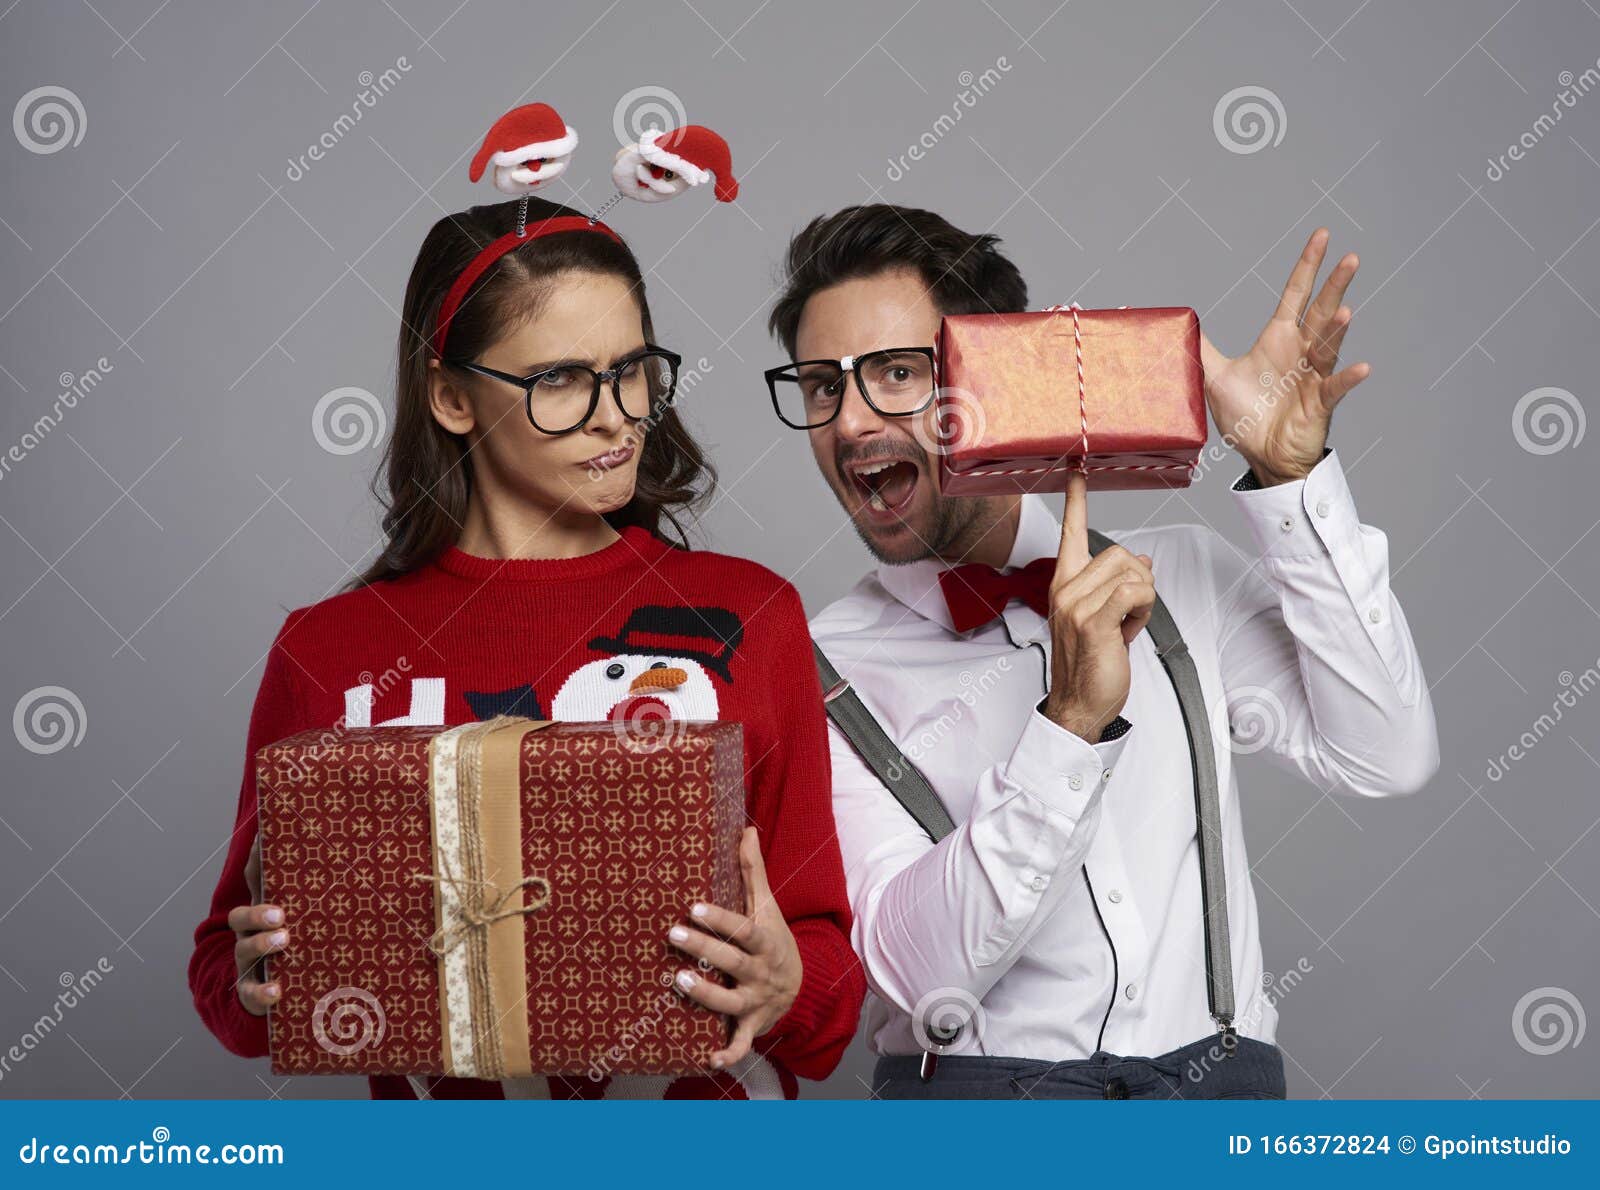 Regali Di Natale Per Una Coppia.Una Coppia Divertente Con Molti Regali Di Natale Fotografia Stock Immagine Di Coppie Divertimento 166372824